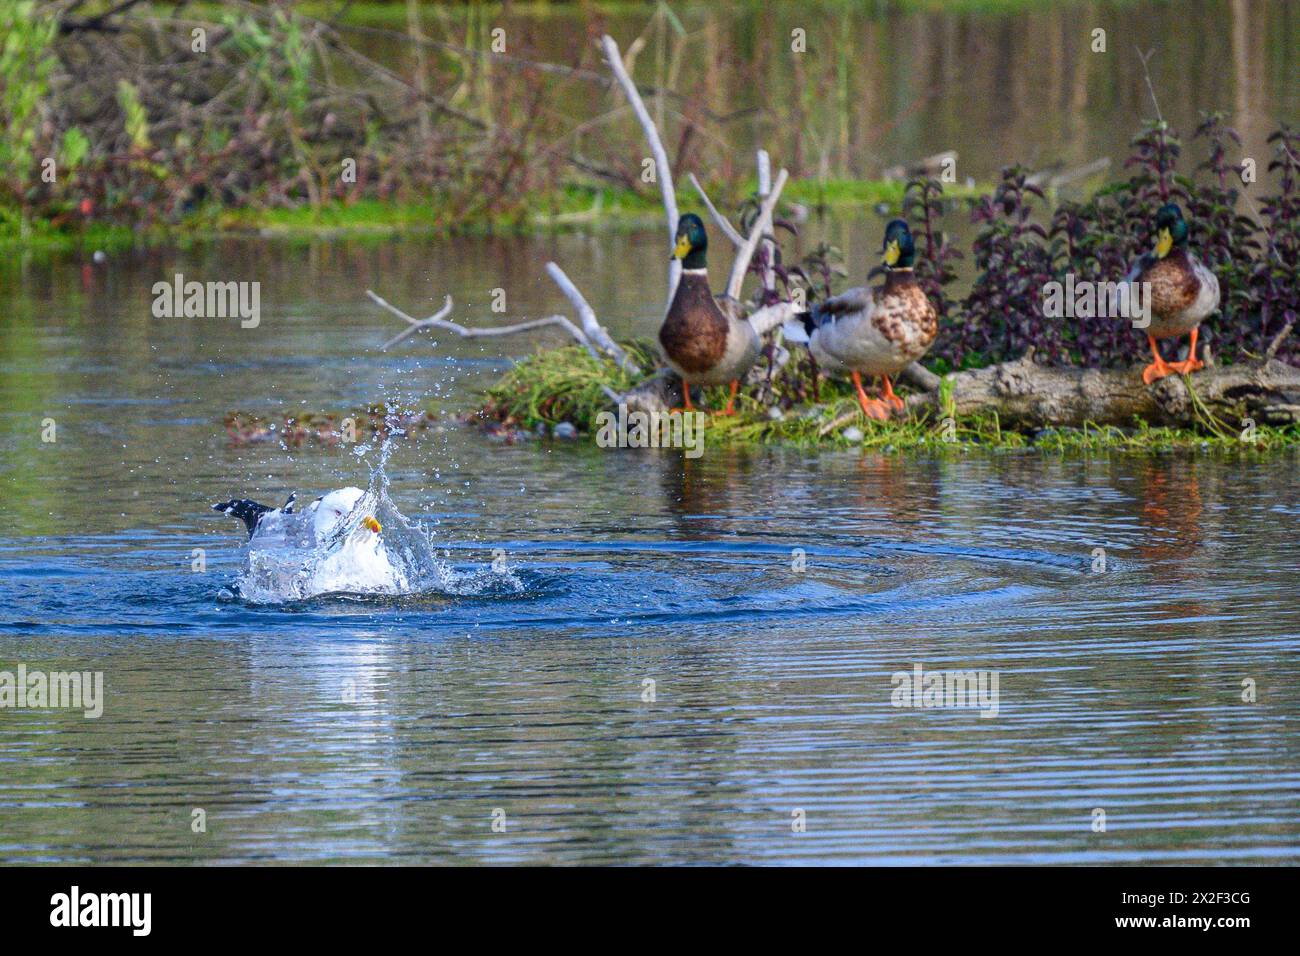 Mouette nage dans l'eau à côté de Mallard (Anas platyrhynchos) nageant dans l'eau. Photographié en Israël, en décembre photographié au Man-Mad Banque D'Images